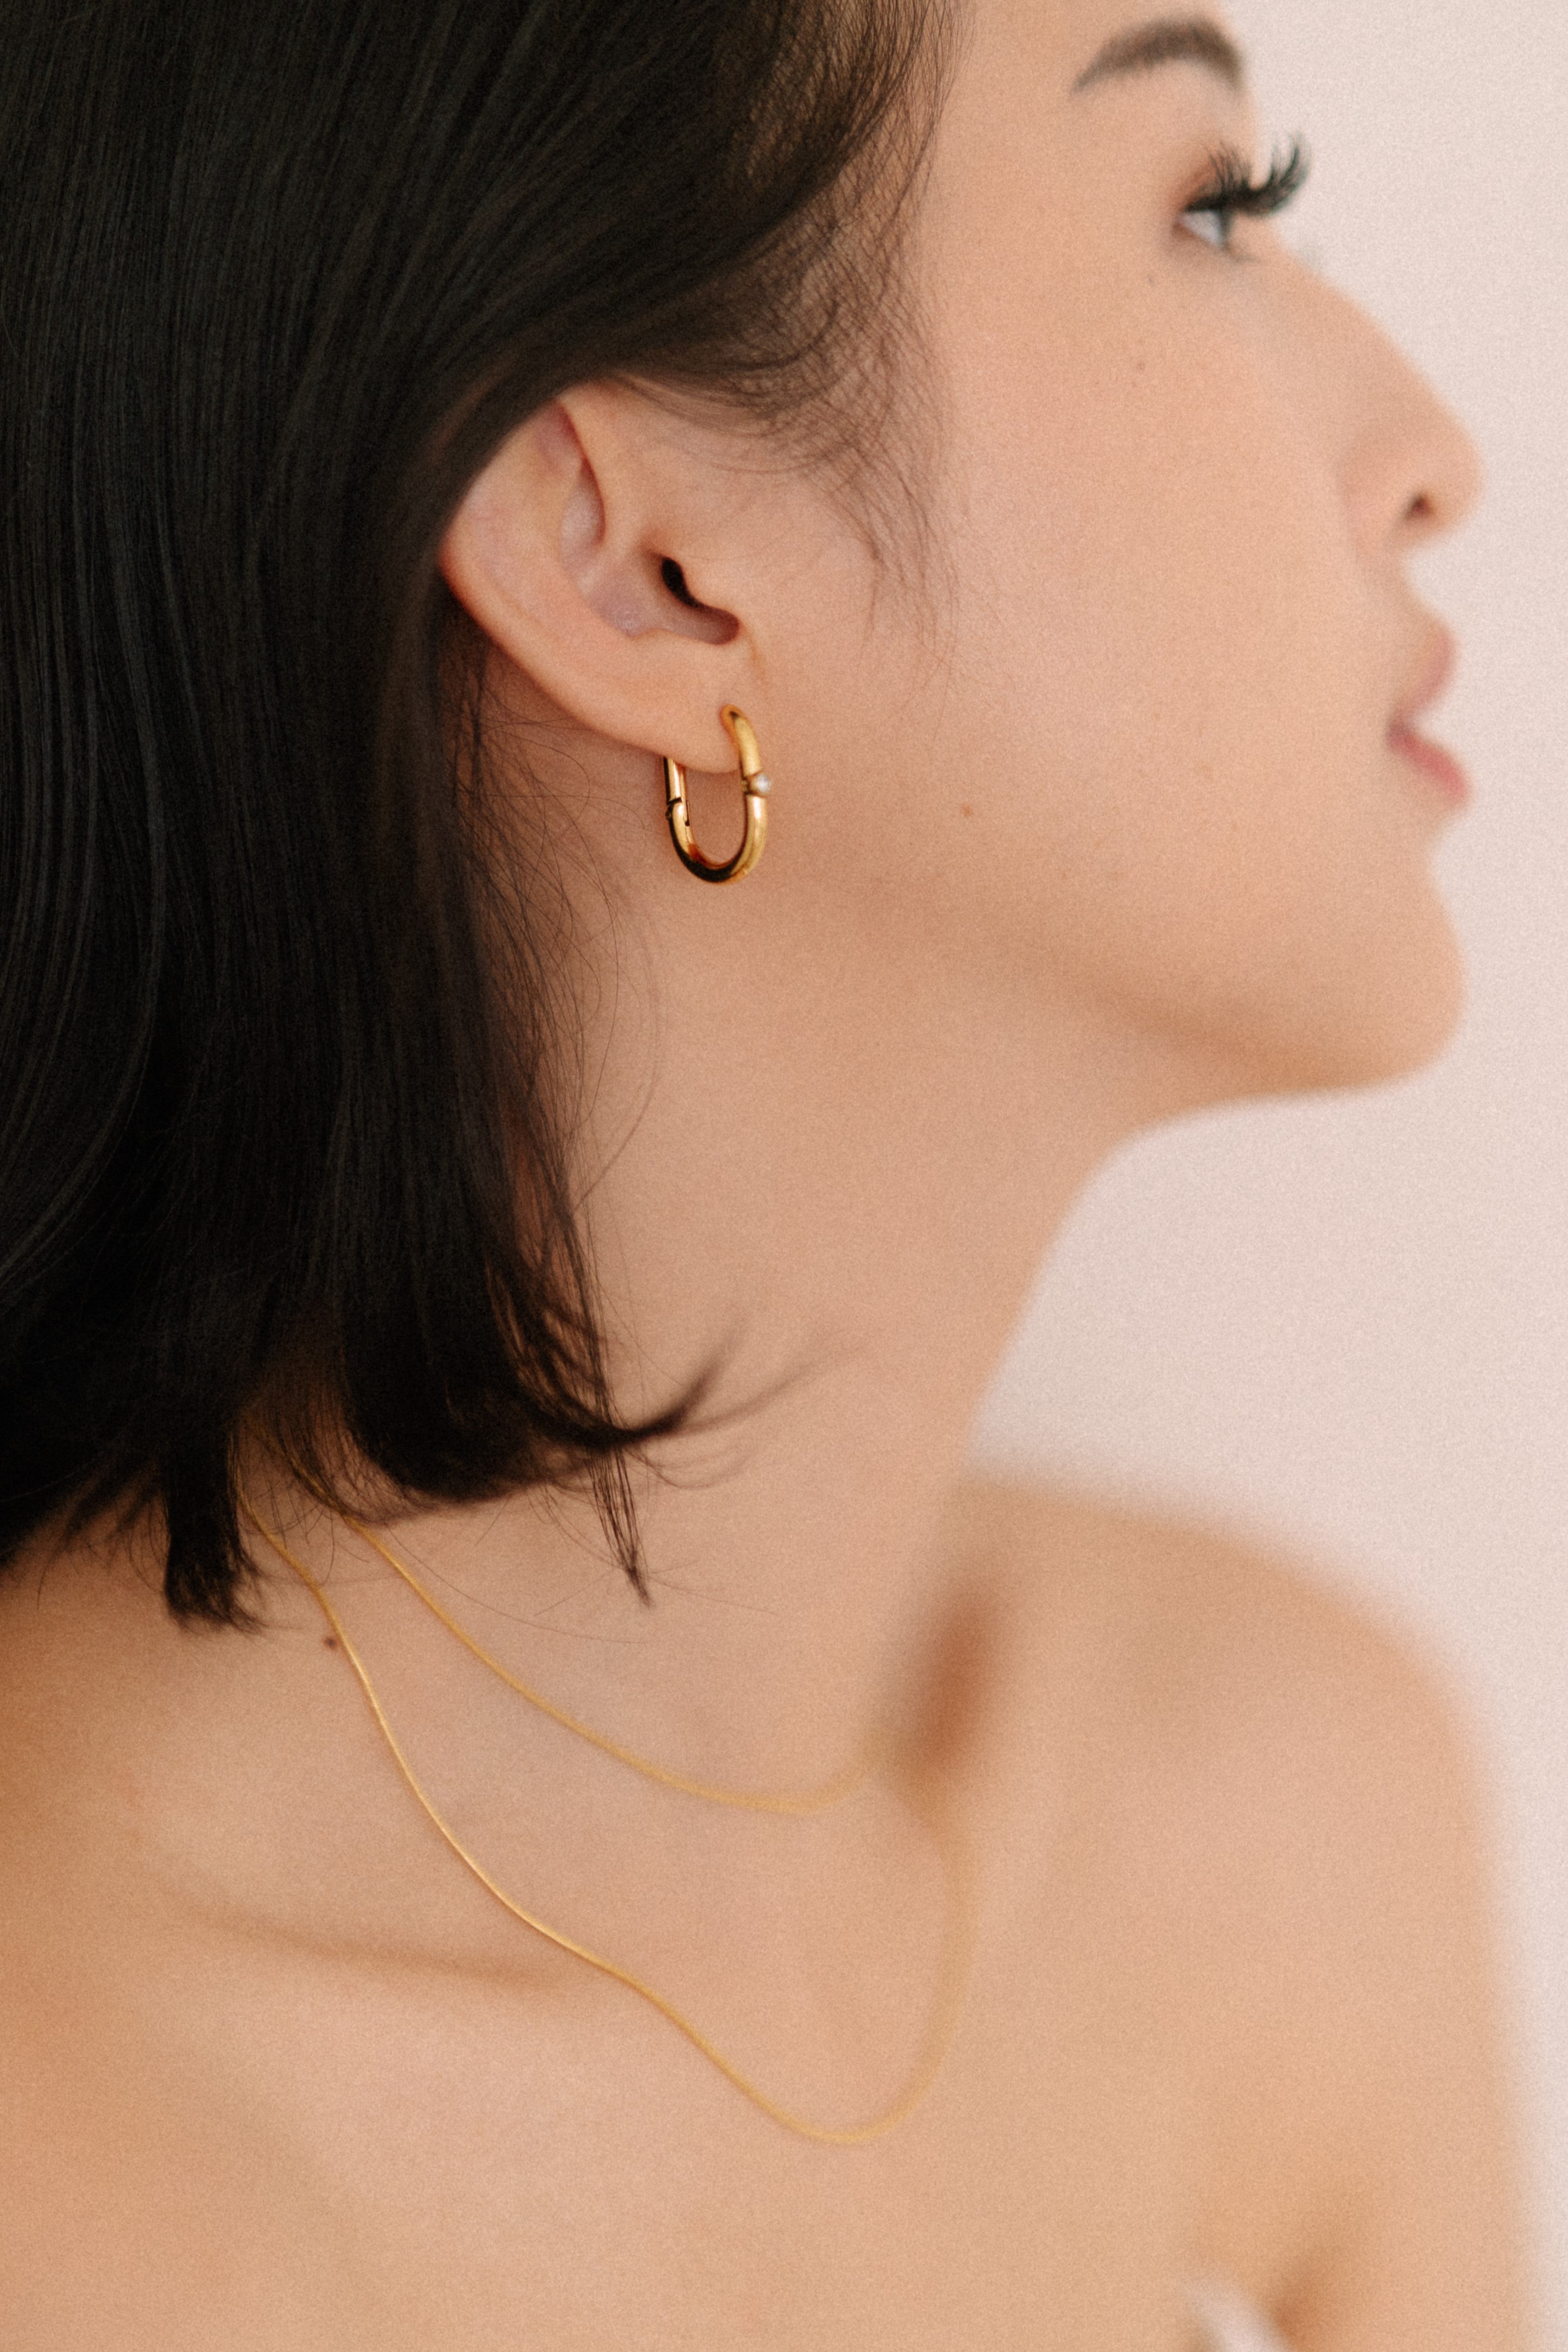 Soft sparkler earrings